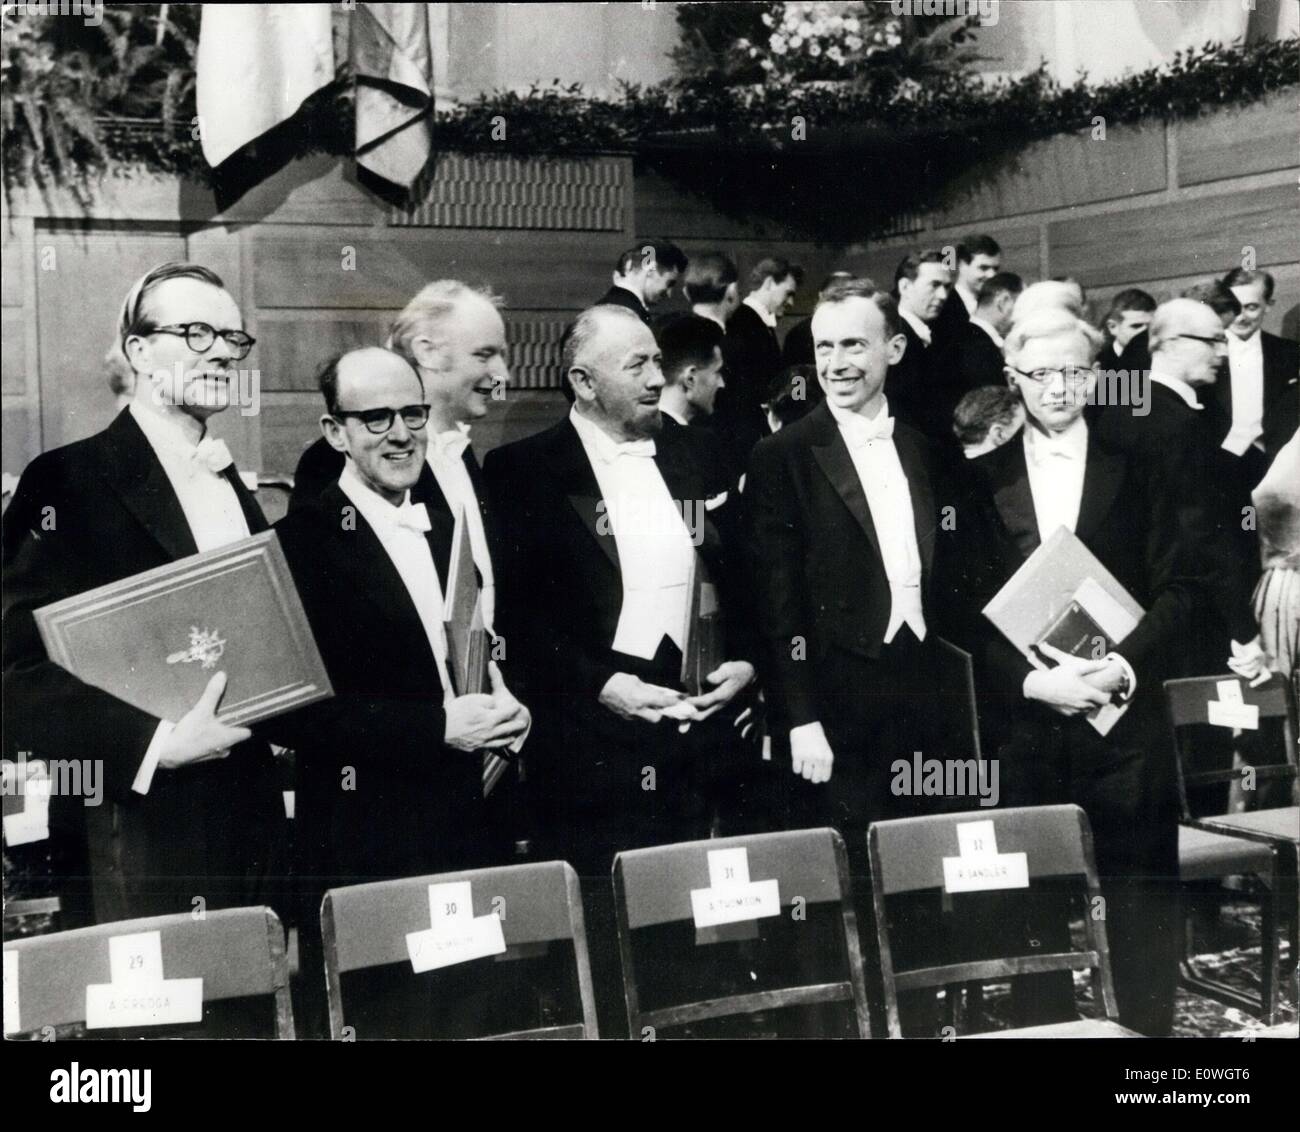 Le 12 décembre 1962 - Le Prix Nobel 1962 Gagnants. Vu pendant la cérémonie de présentation à la Bourse de Stockholm sont certains des gagnants de prix de cette année. Photo montre :- De gauche à droite : Ils sont Professeur Maurice Wilkins, le Dr Max Perutz, le Dr Francis Crick, John Steinbeck, le professeur James Watson et M. John C. Kendrew. Banque D'Images